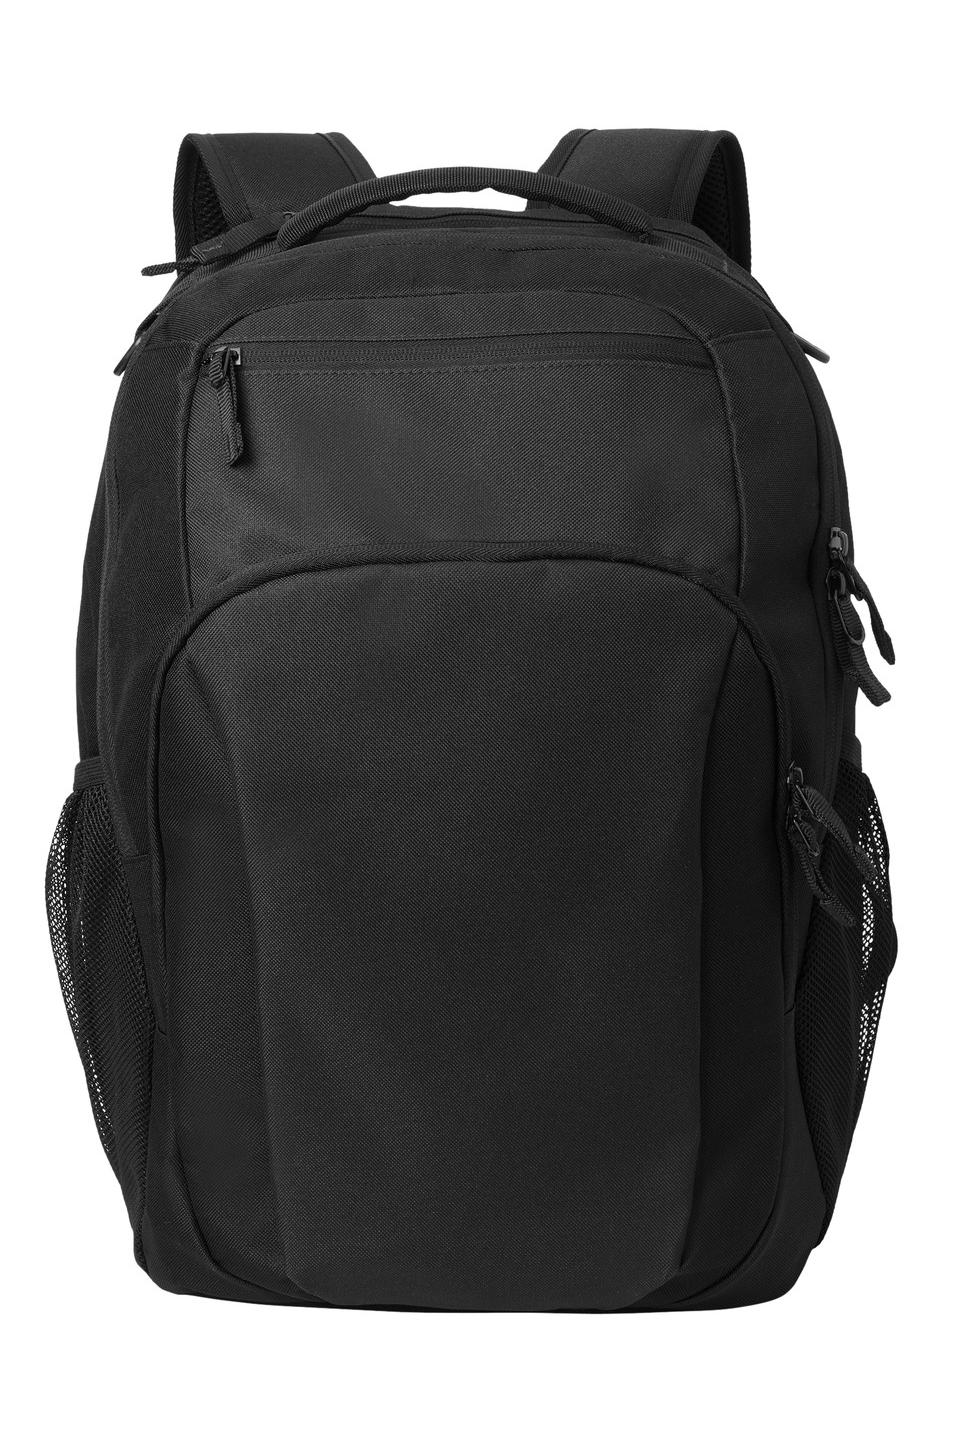 Port Authority® BG232 - Transport Backpack